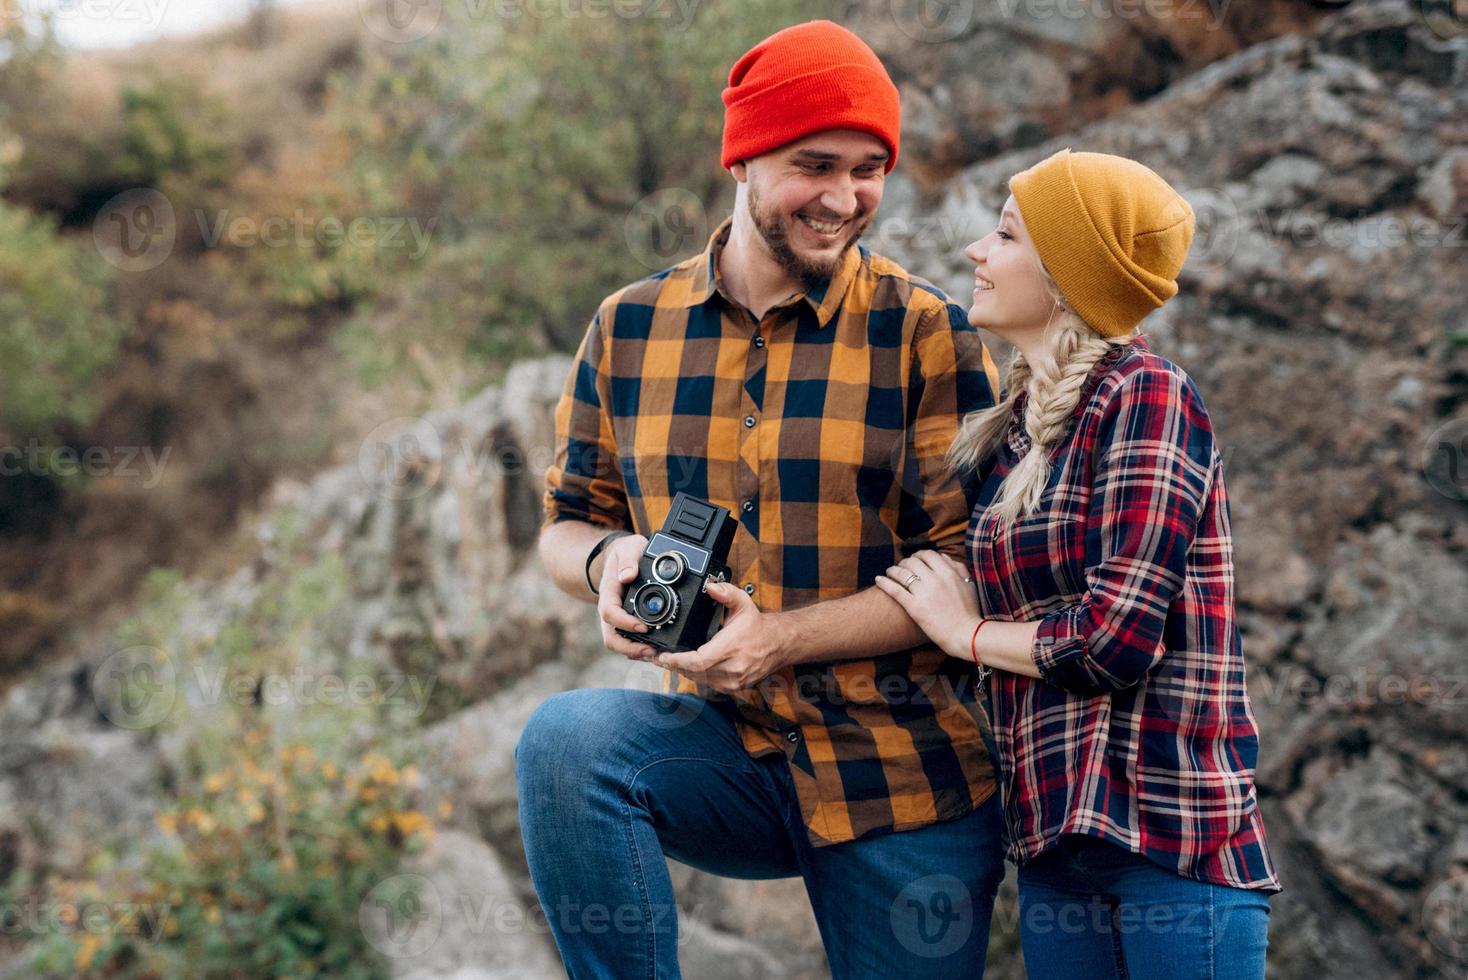 Un mec chauve avec une barbe et une fille blonde aux chapeaux lumineux prennent des photos avec un vieil appareil photo